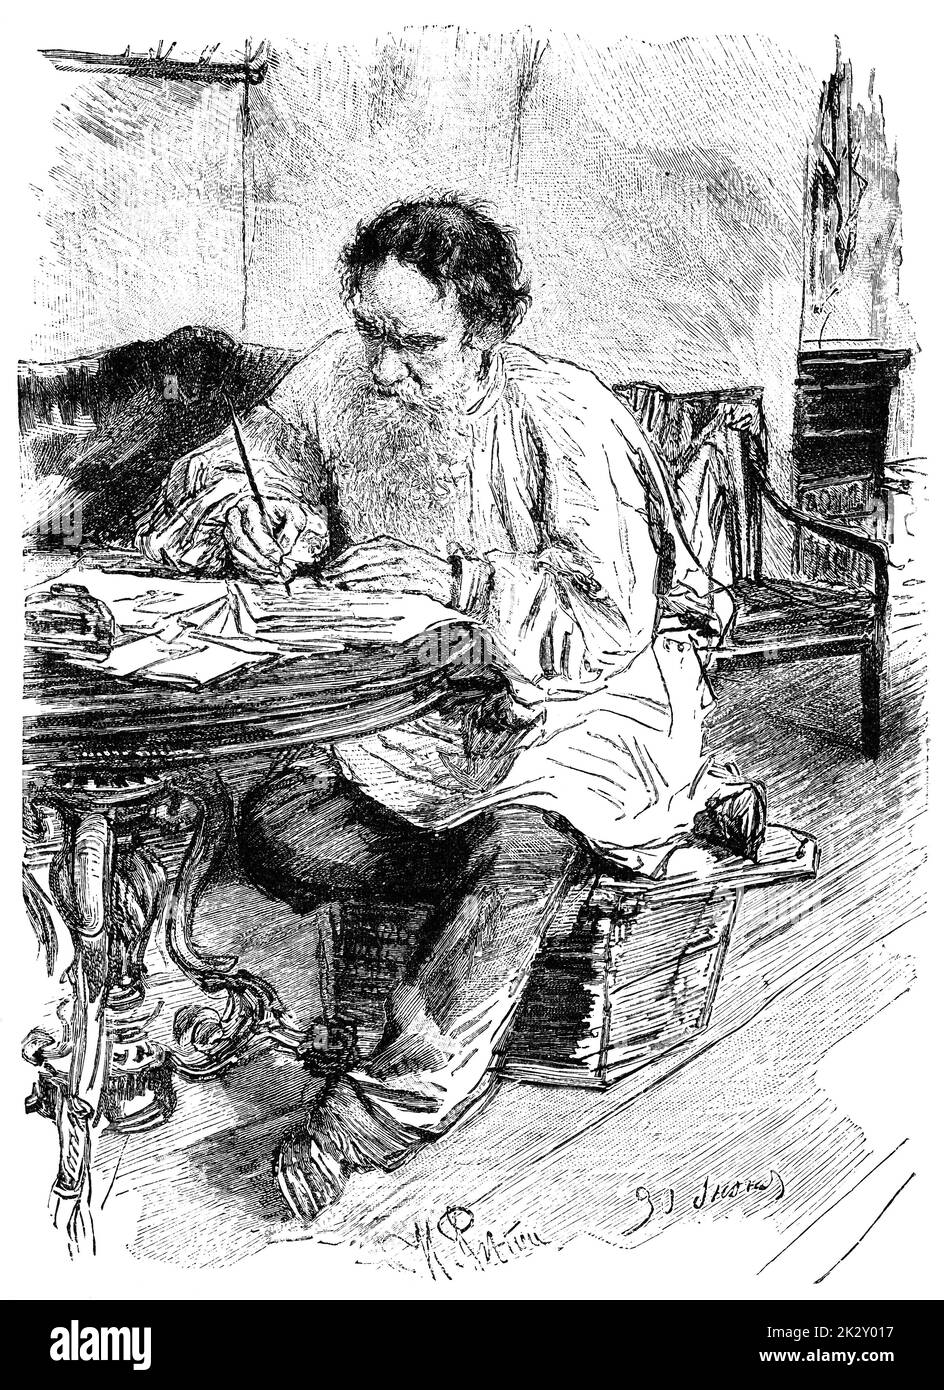 Porträt des Grafen Lew (Leo) Nikolajewitsch Tolstoi - ein russischer Schriftsteller, der als einer der größten Autoren aller Zeiten gilt. Illustration des 19. Jahrhunderts. Weißer Hintergrund. Stockfoto